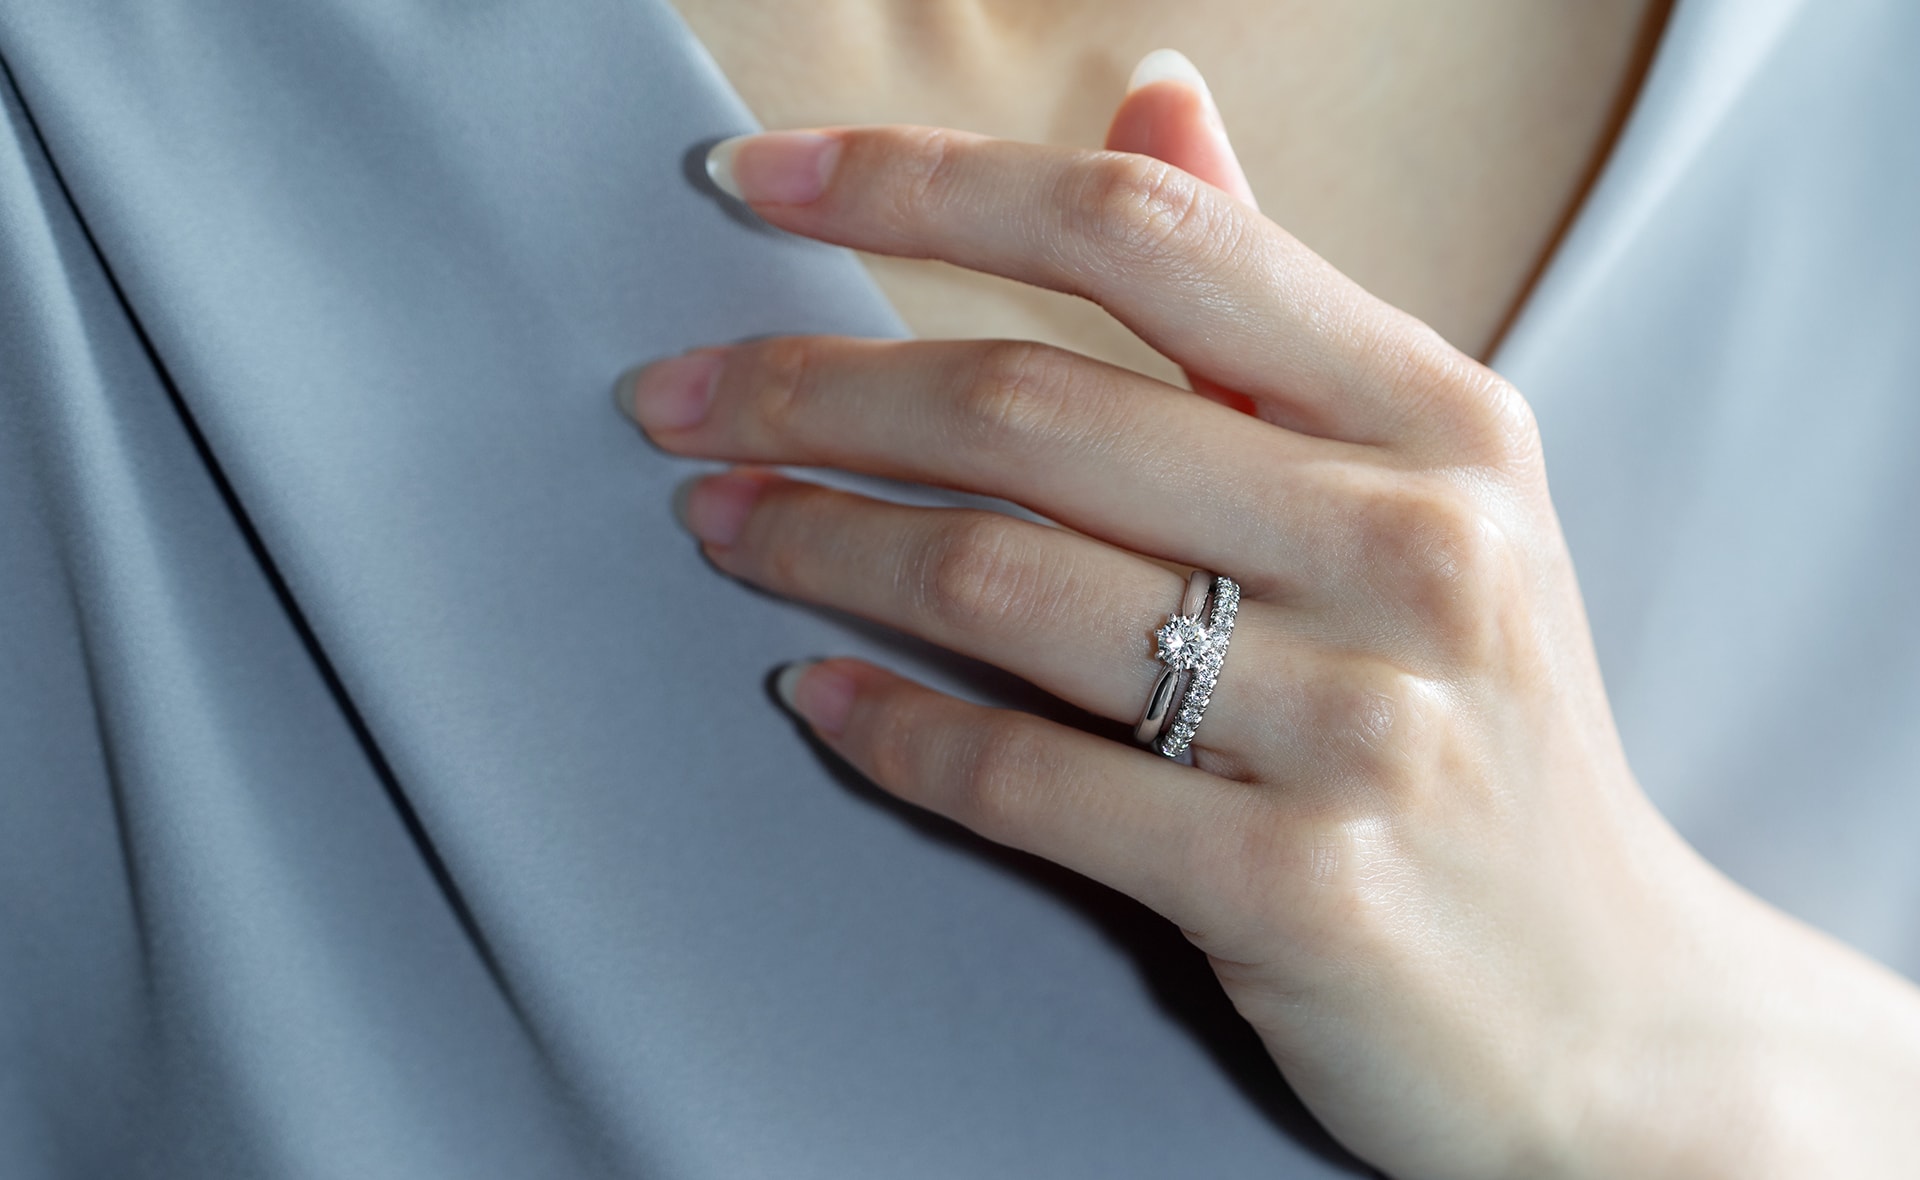 【初心者向け】婚約指輪の失敗しない選び方 - プロがおすすめする8つのポイント